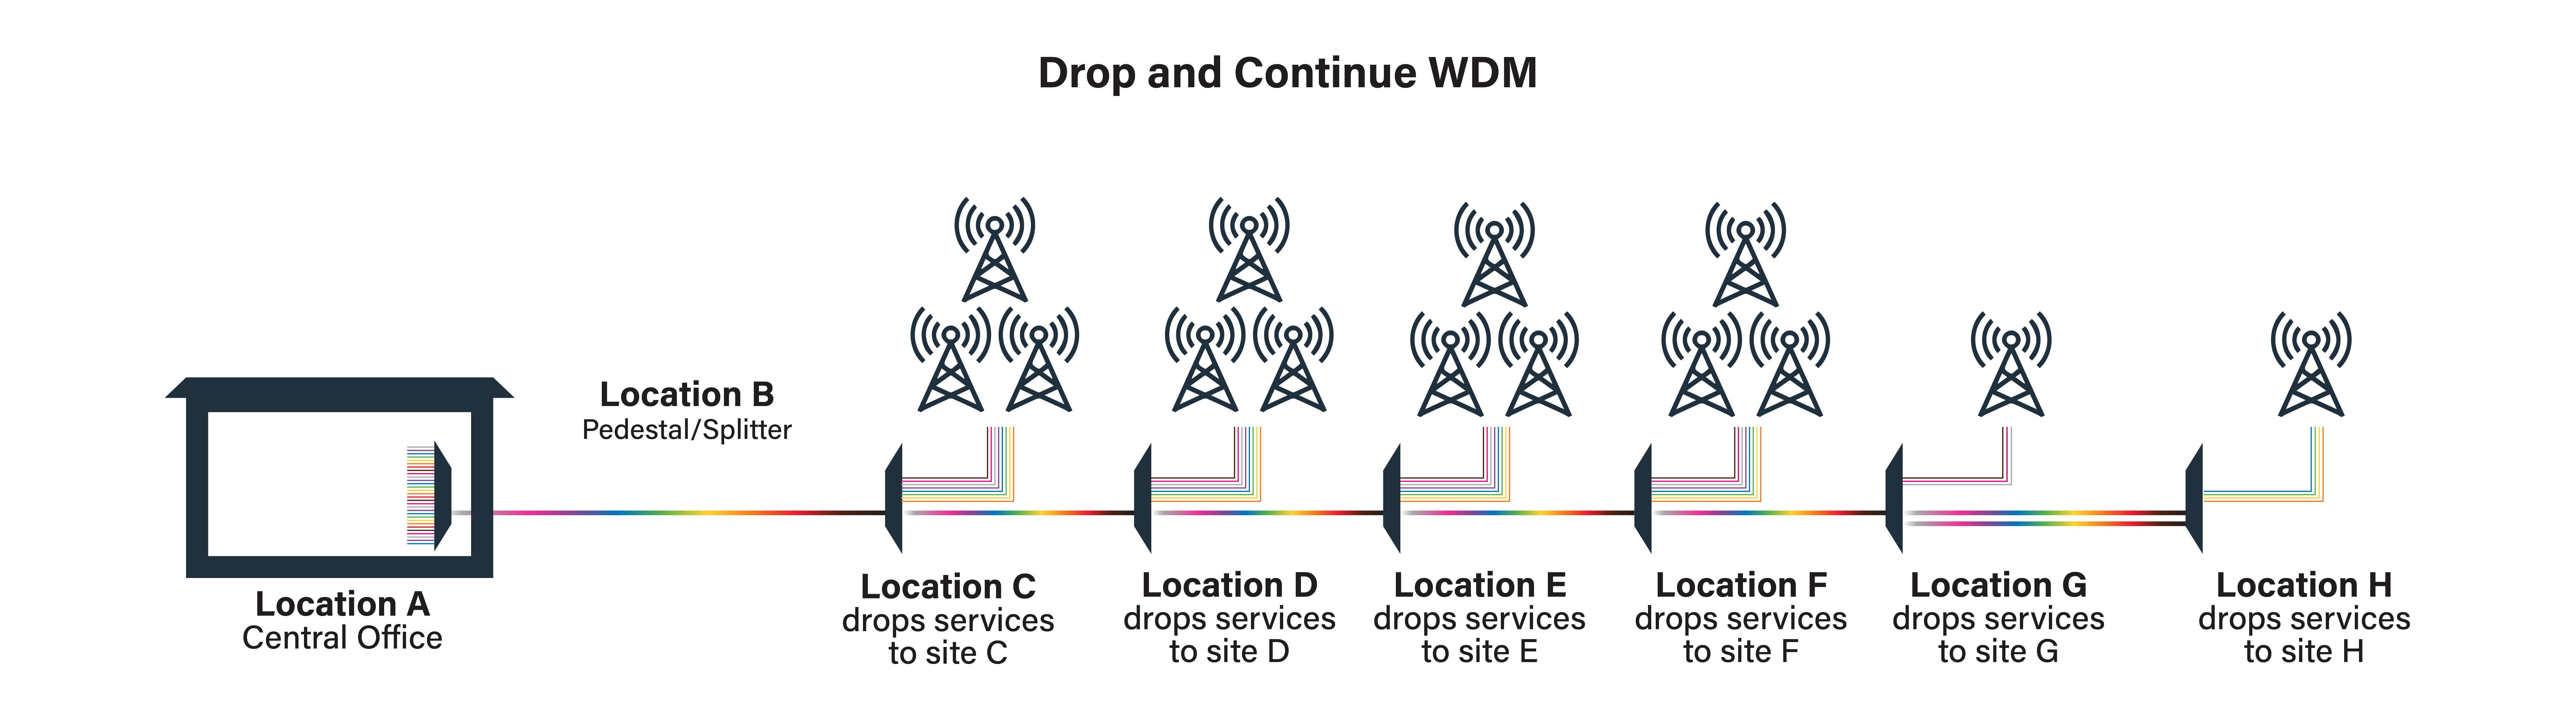 Drop and continue WDM diagram